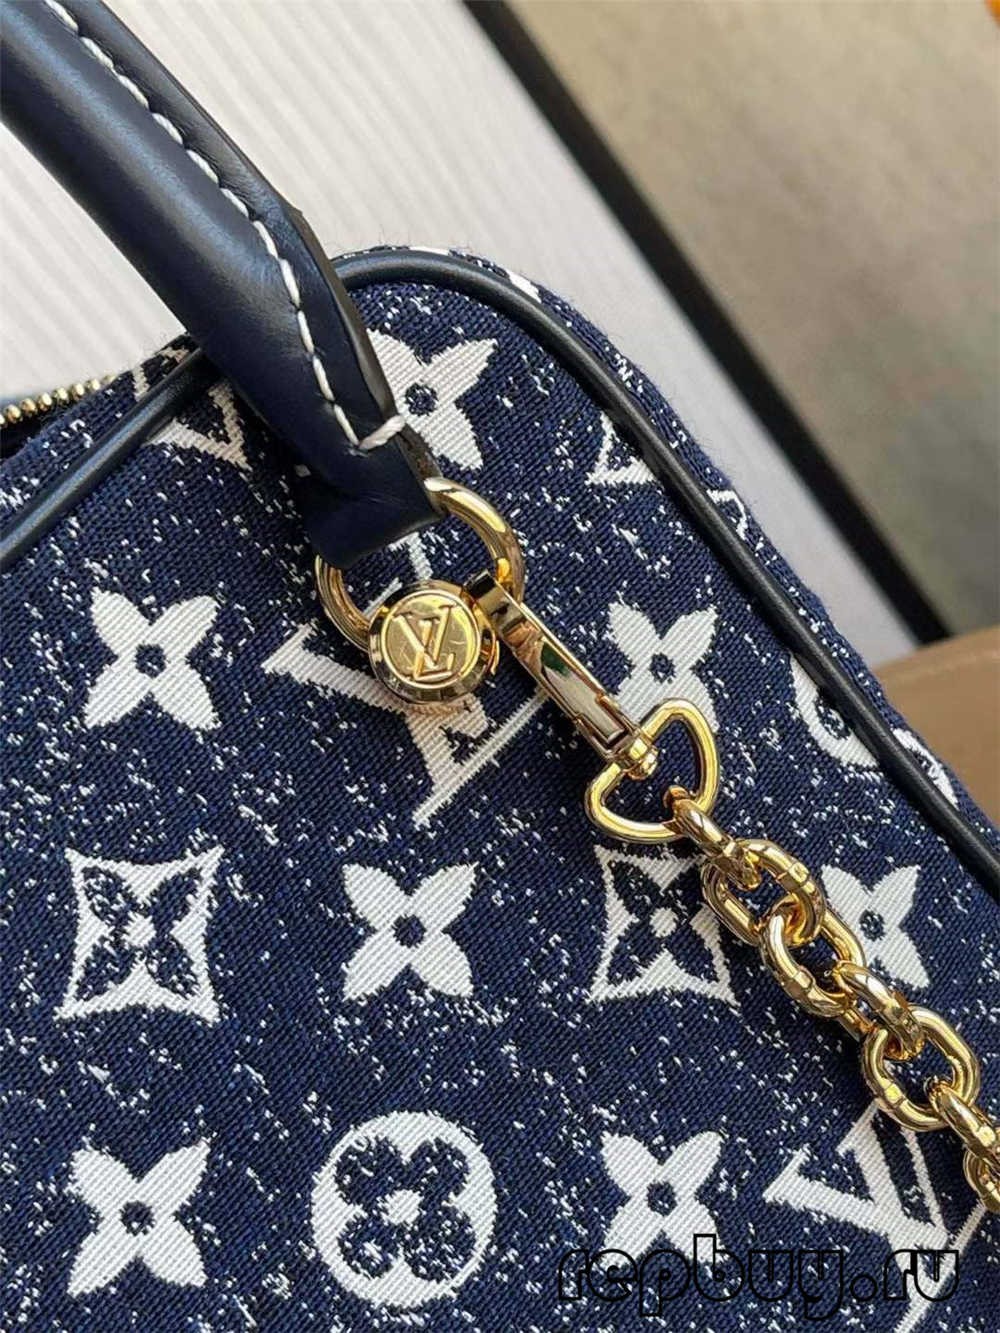 Louis Vuitton SQUARE soma M59611 augstākās kvalitātes reprodukcijas soma (atjaunināta 2022. gadā) — labākās kvalitātes viltotās Louis Vuitton somas tiešsaistes veikals, dizainera somas kopija ru